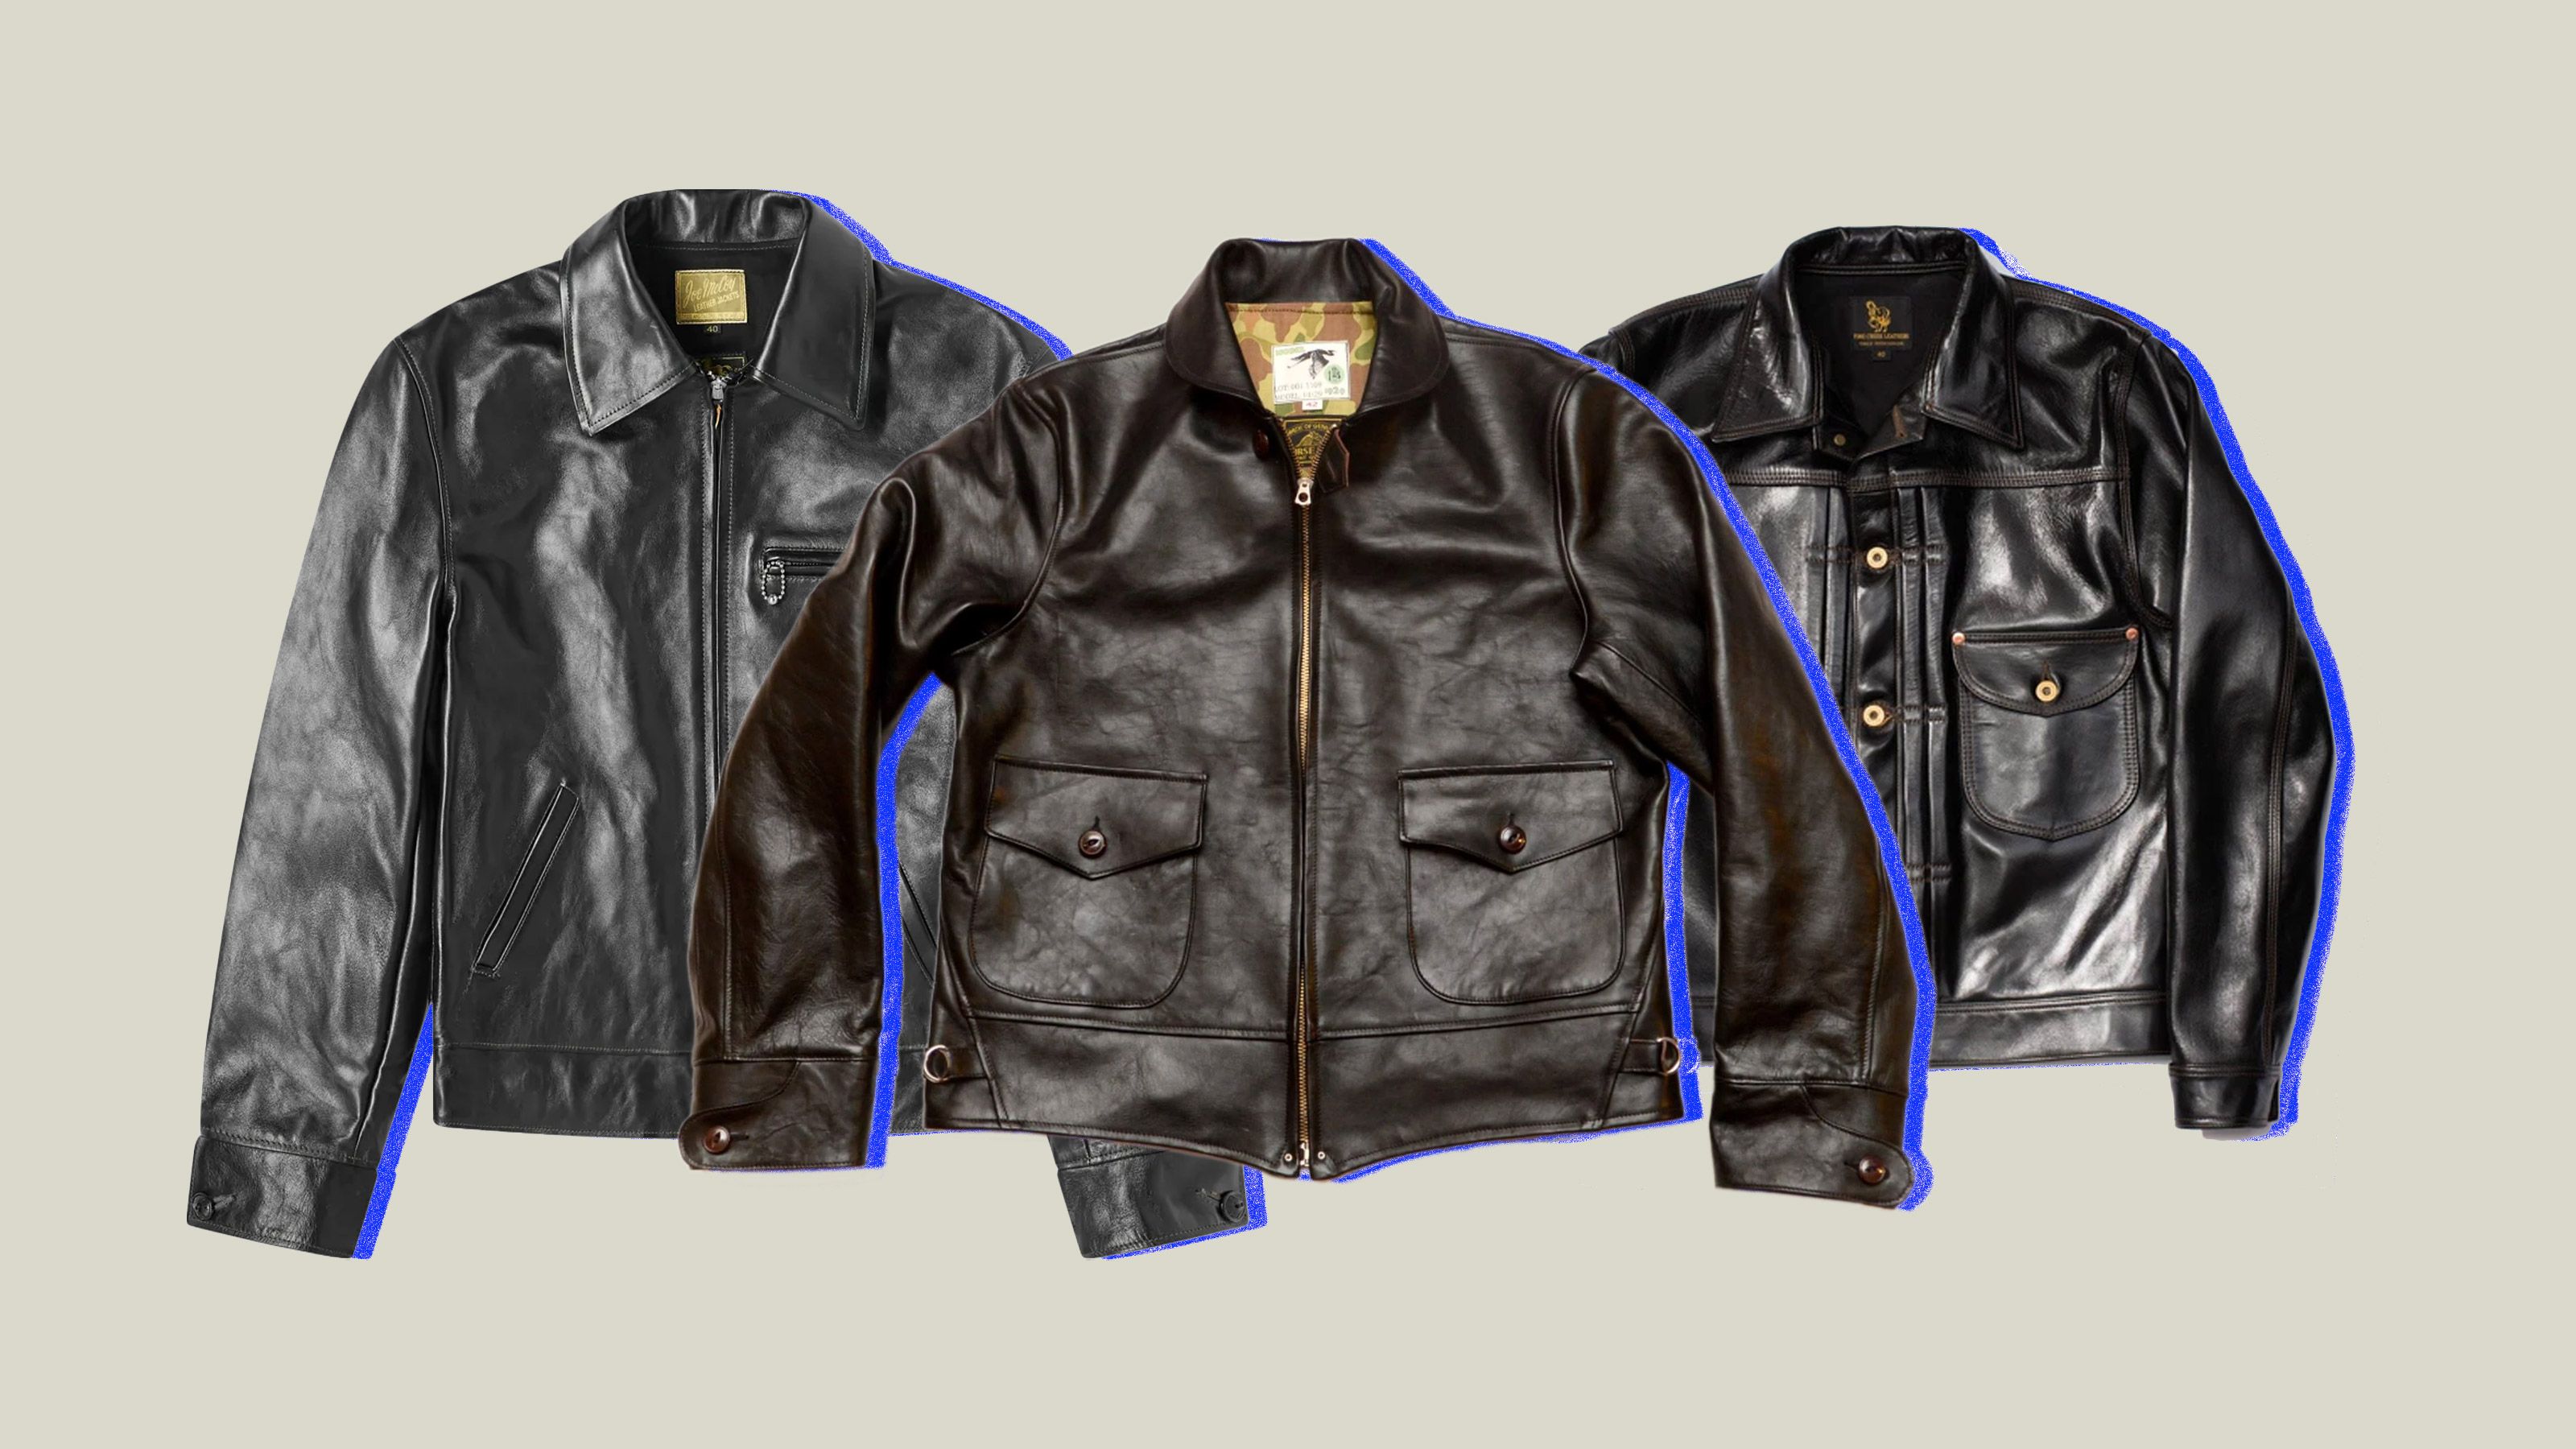 KAINAT Mens Leather Jacket Motorcycle Bomber Biker Genuine Lambskin Leather Jacket Handmade Product 412